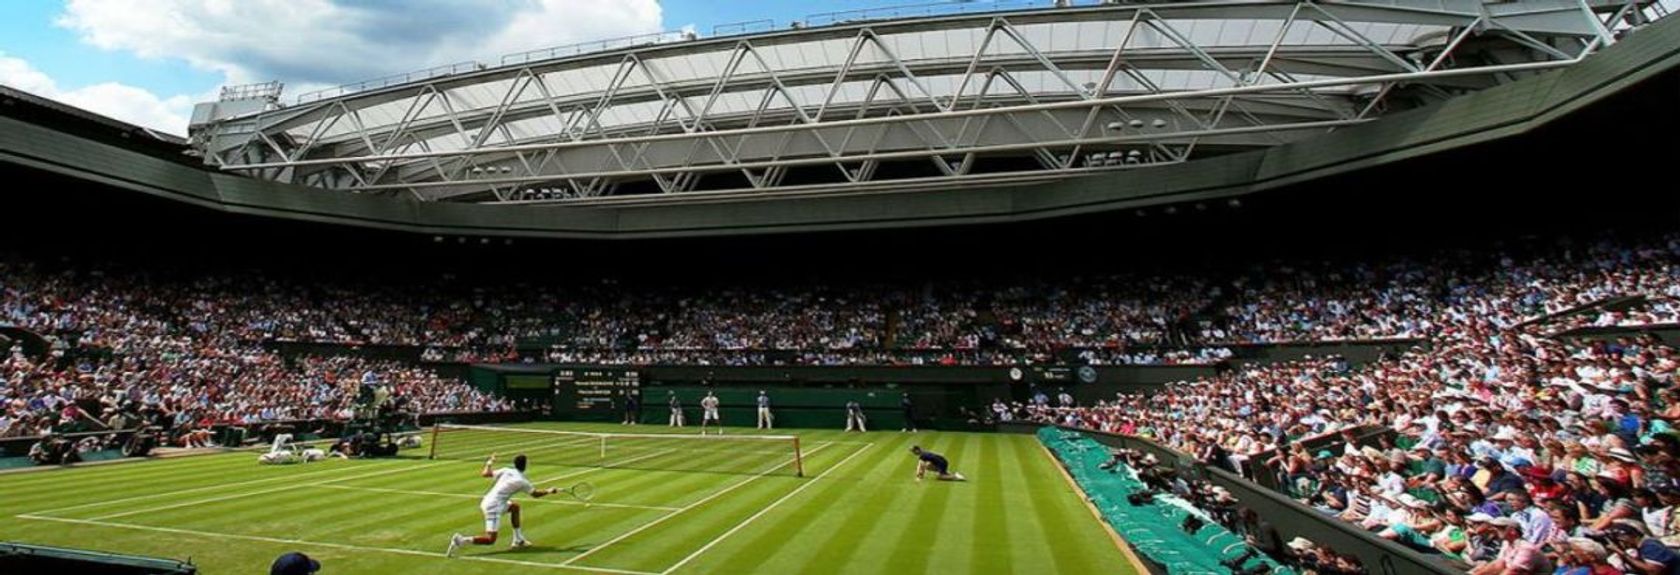 Você é louco por tênis? Então uma visita à grama sagrada de Wimbledon e ao Wimbledon Tennis Museum não deve ser perdida durante sua visita a Londres